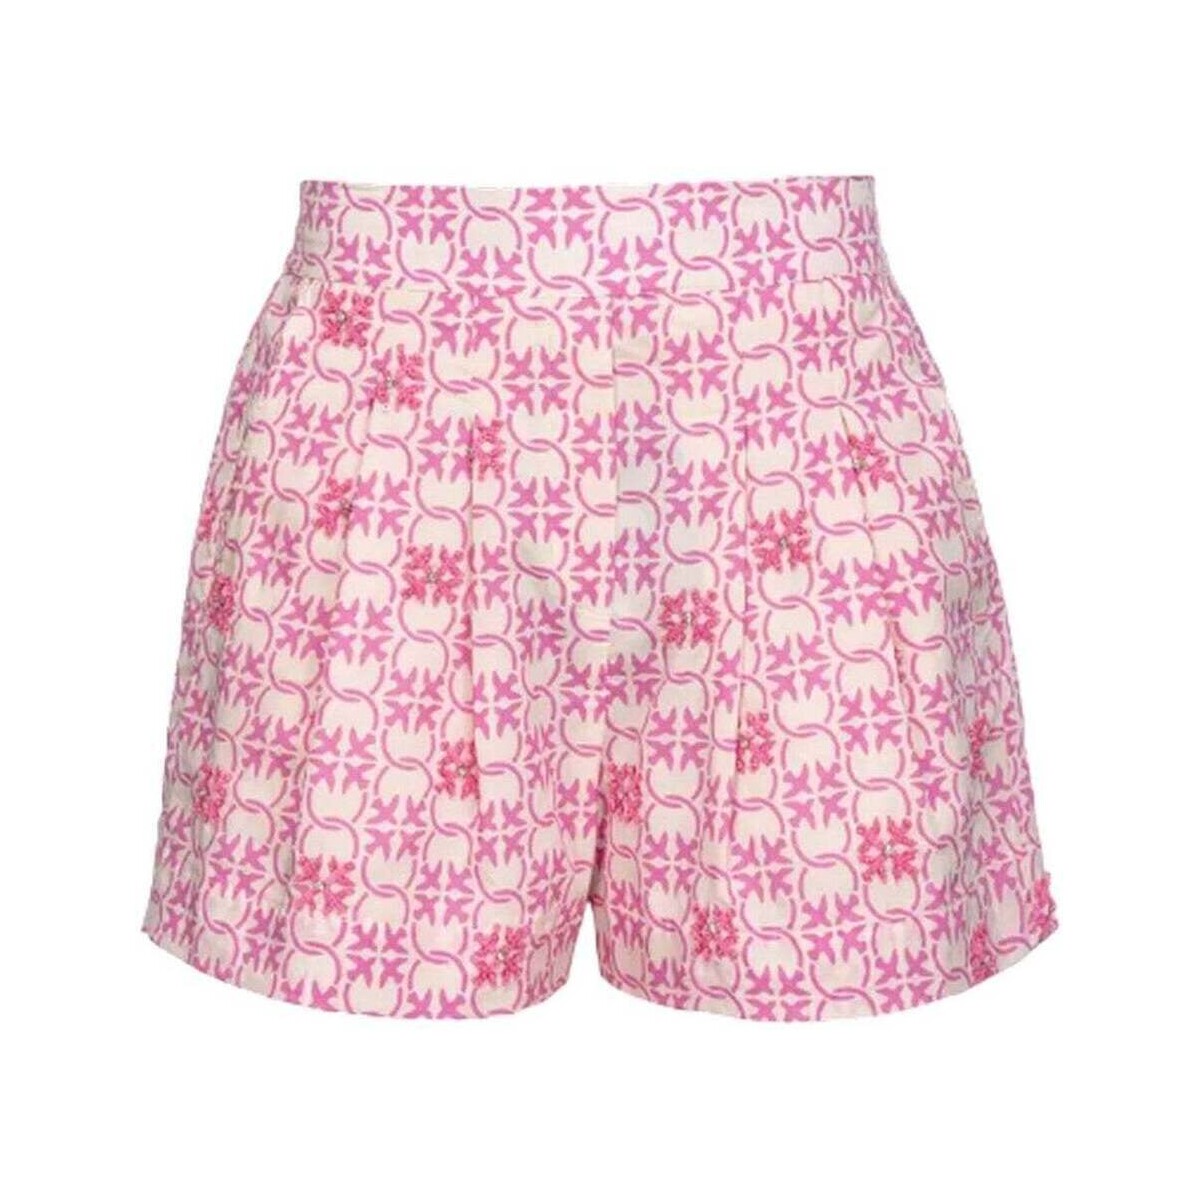 Vêtements Femme Shorts / Bermudas Pinko  Multicolore